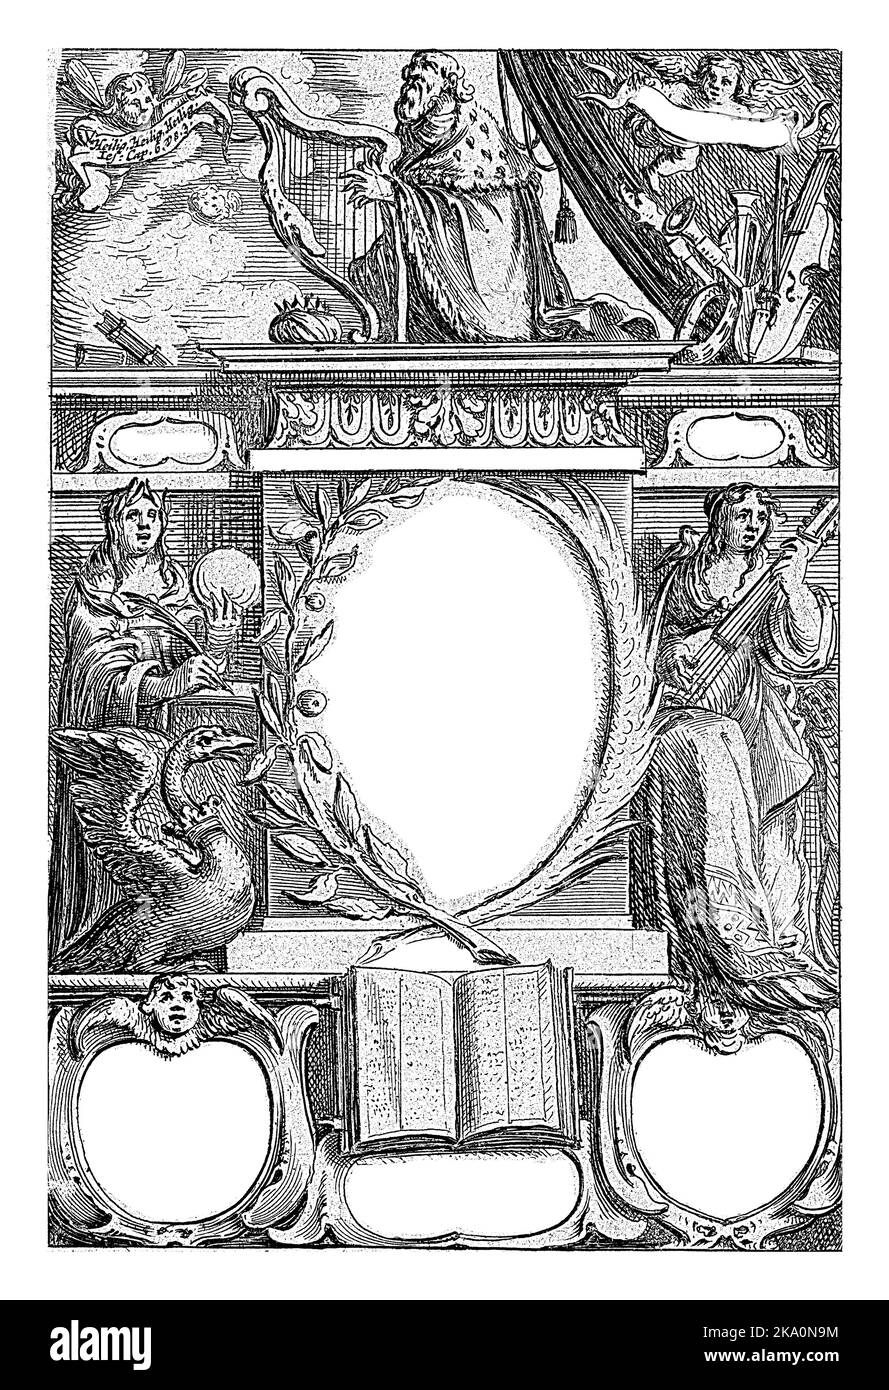 Un monument avec le titre du livre de Willem Sluiter est flanqué par la personnification de Poésie, avec un quill en main, et de musique, avec un luth. Banque D'Images